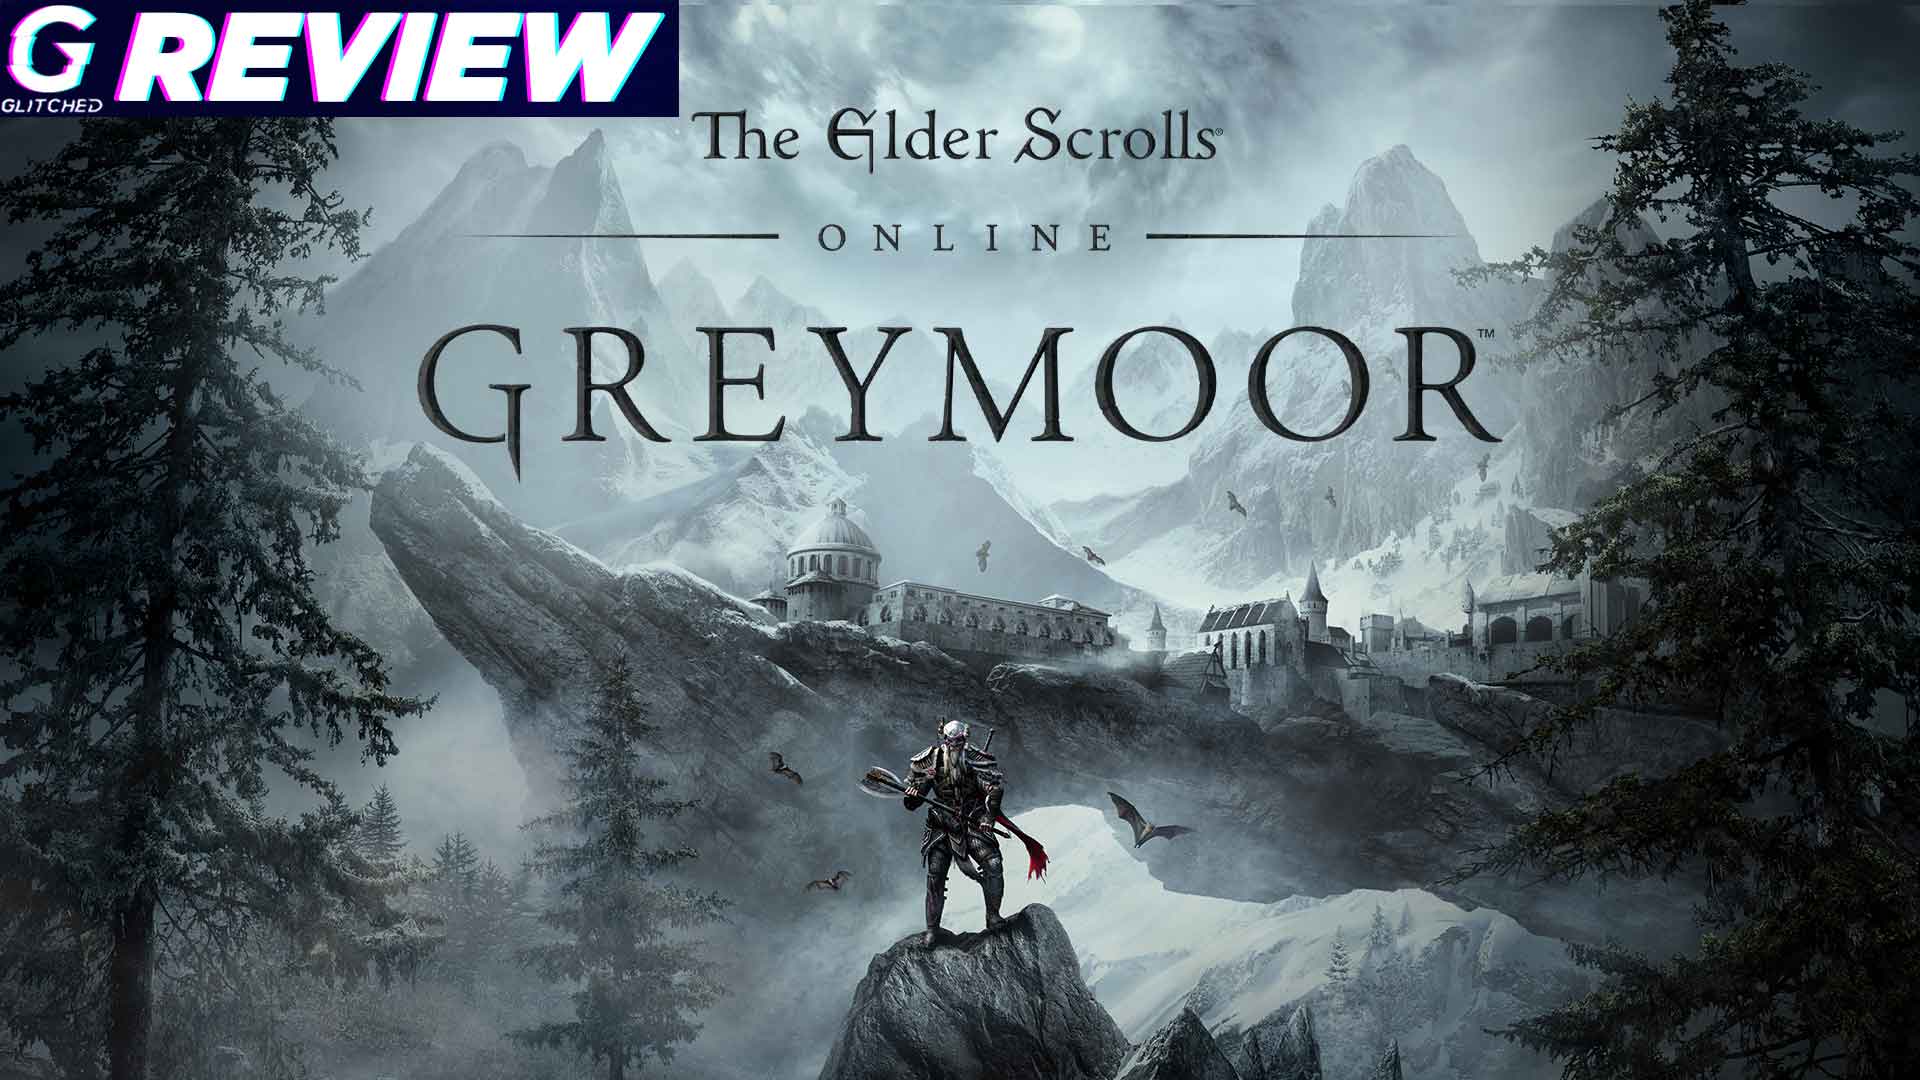 The Elder Scrolls Online Greymoor Review